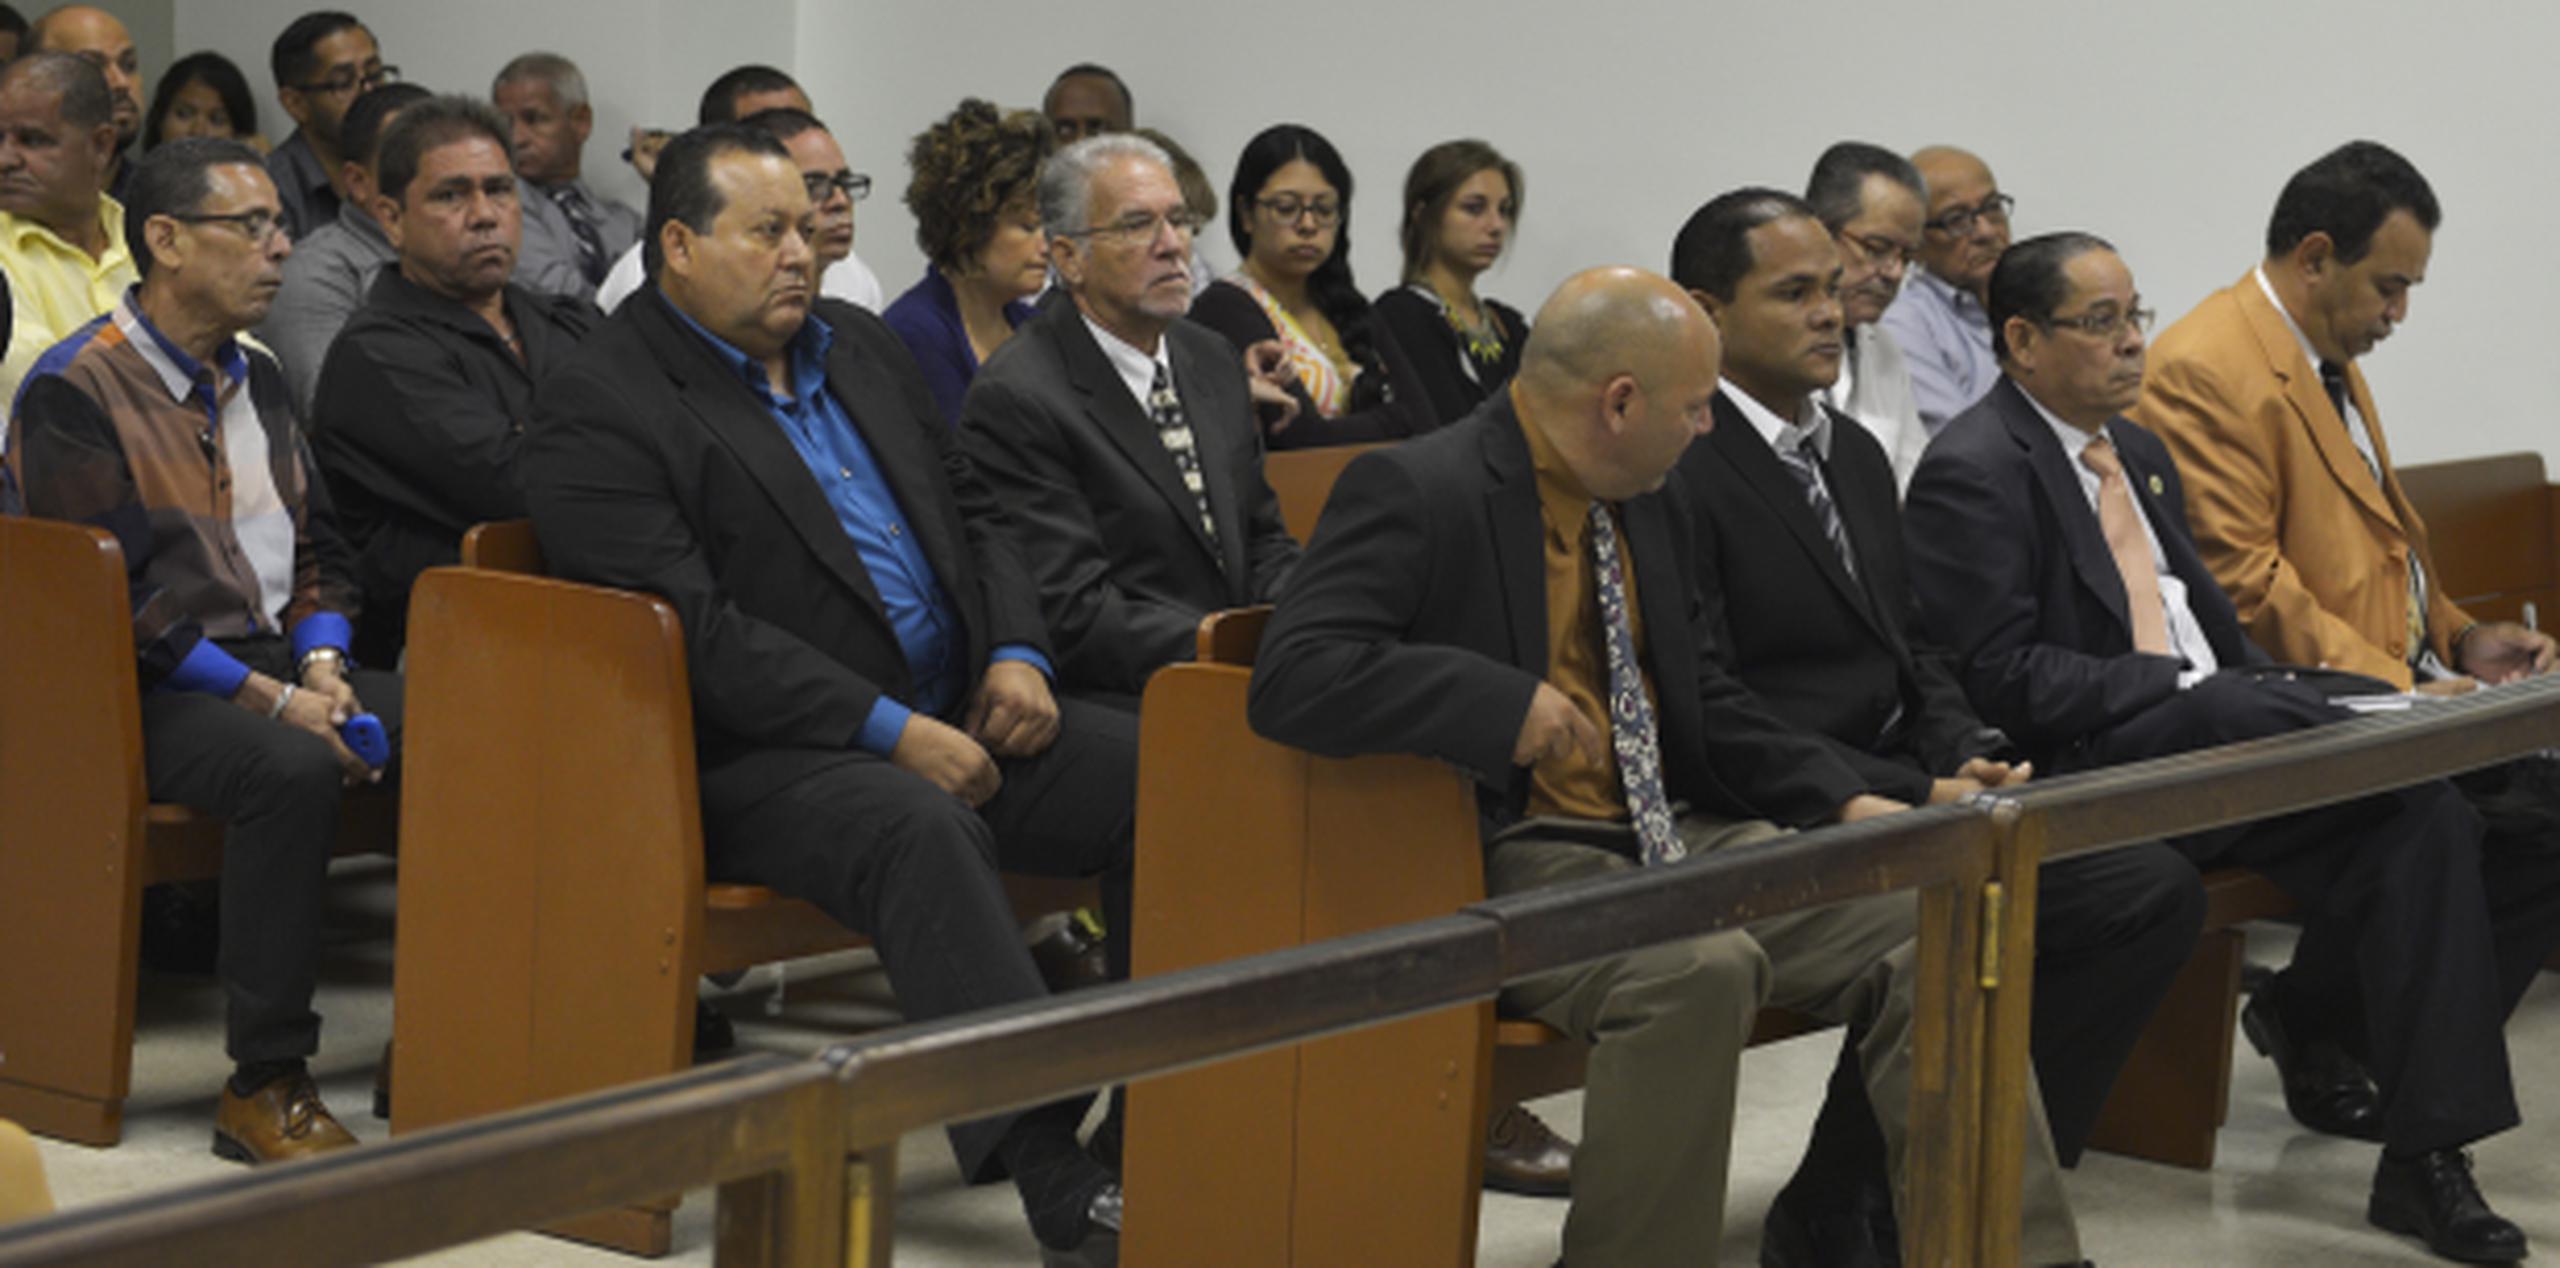 La vista judicial en la sala del juez Ángel Pagán estuvo concurrida. (ismael.fernandez@gfrmedia.com)